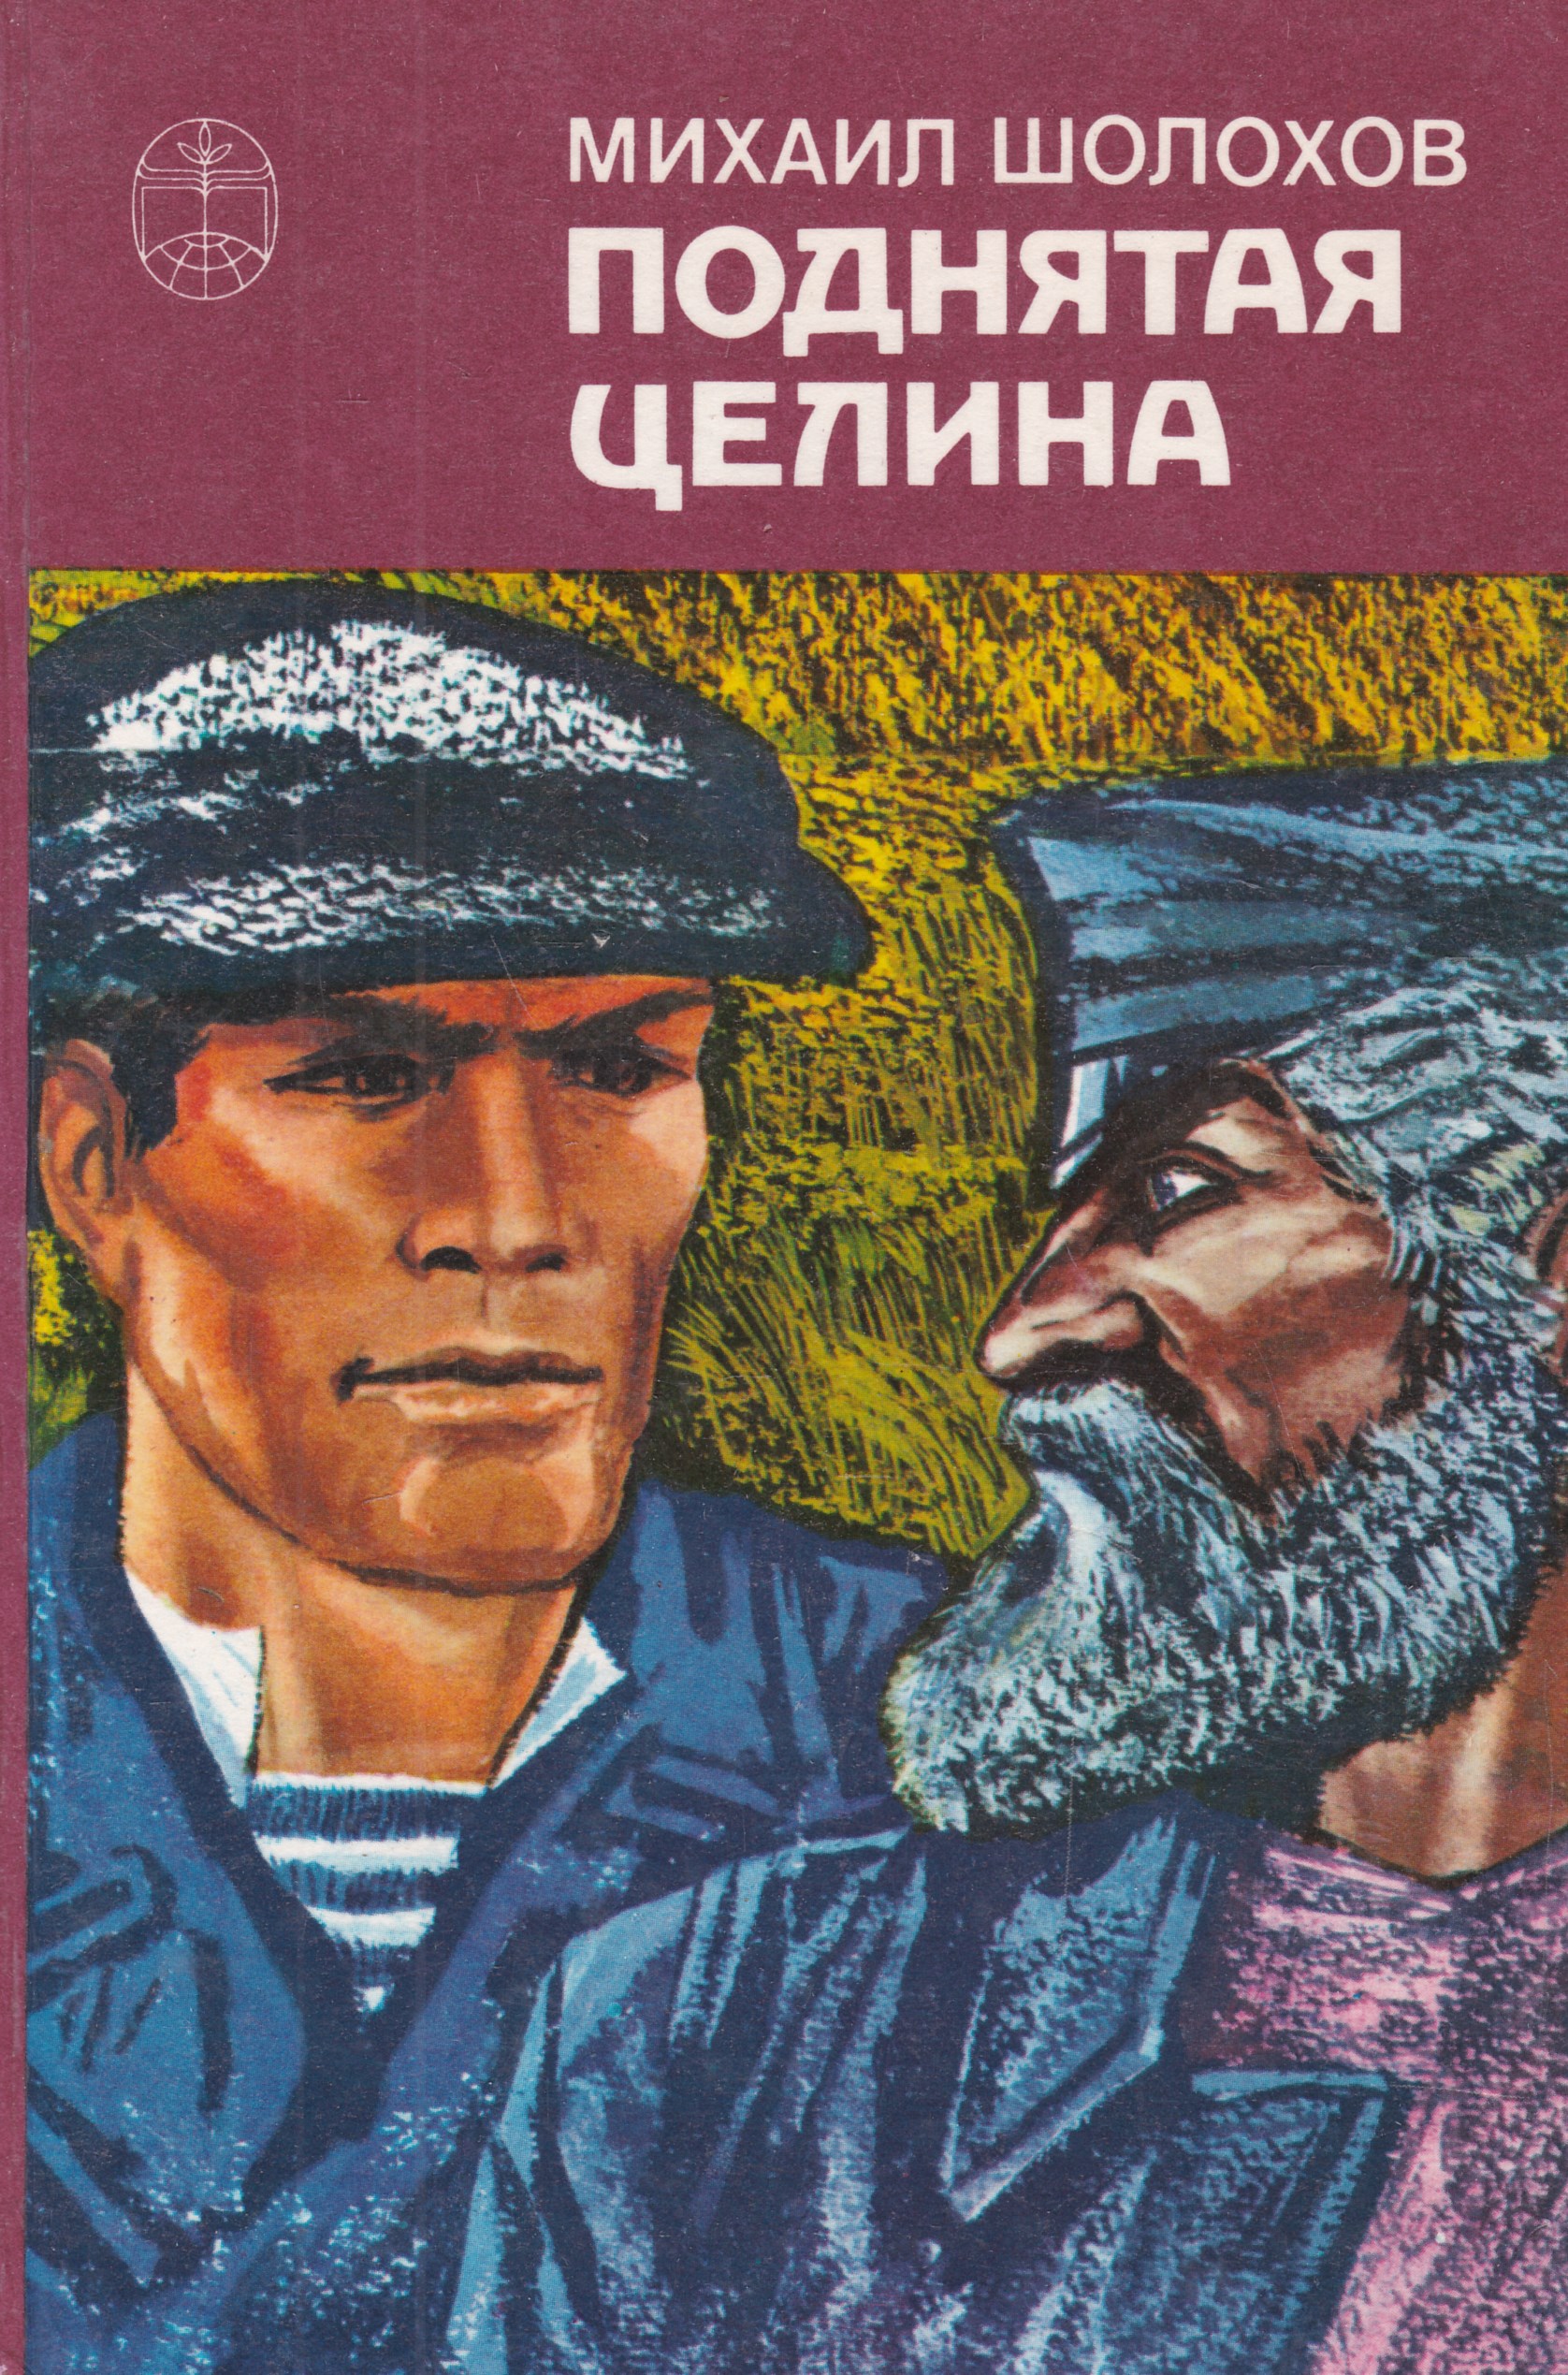 «Поднятая Целина» м. а. Шолохова (1960).